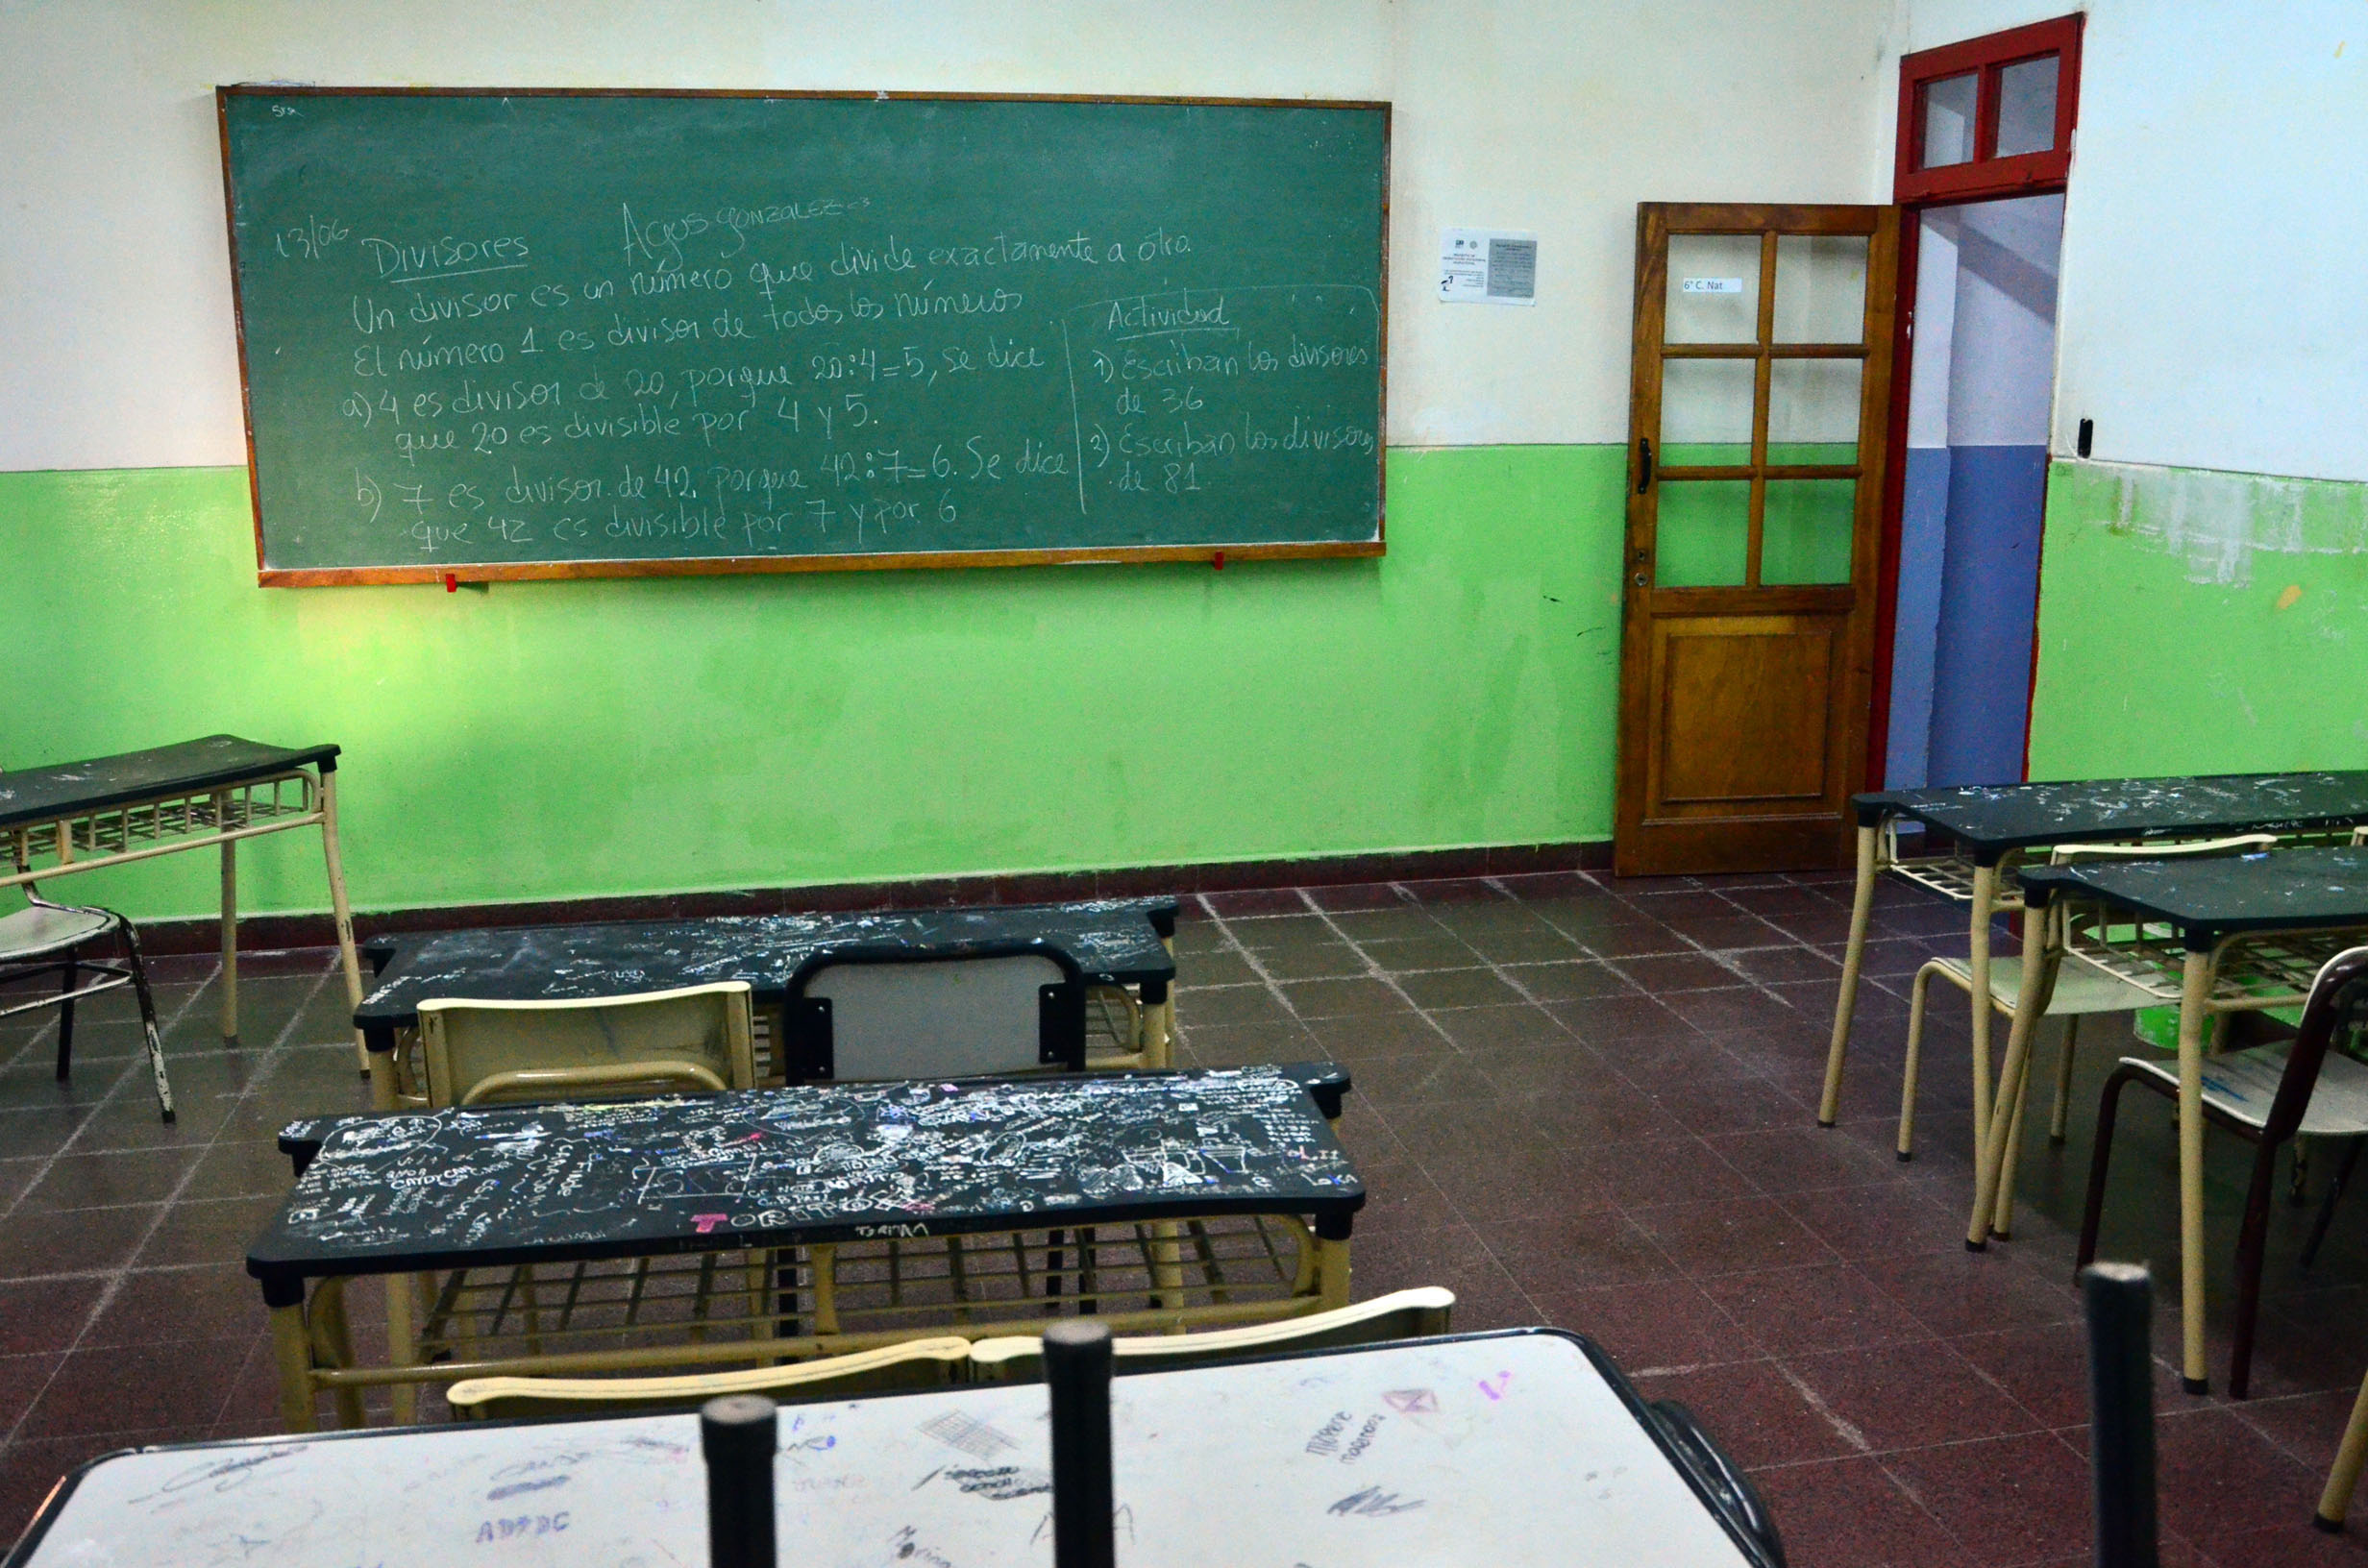 El distanciamiento social y los protocolos ante la aparición de casos sospechosos reduce sensiblemente el espacio útil de cada escuela. Foto archivo: Marcelo Ochoa.